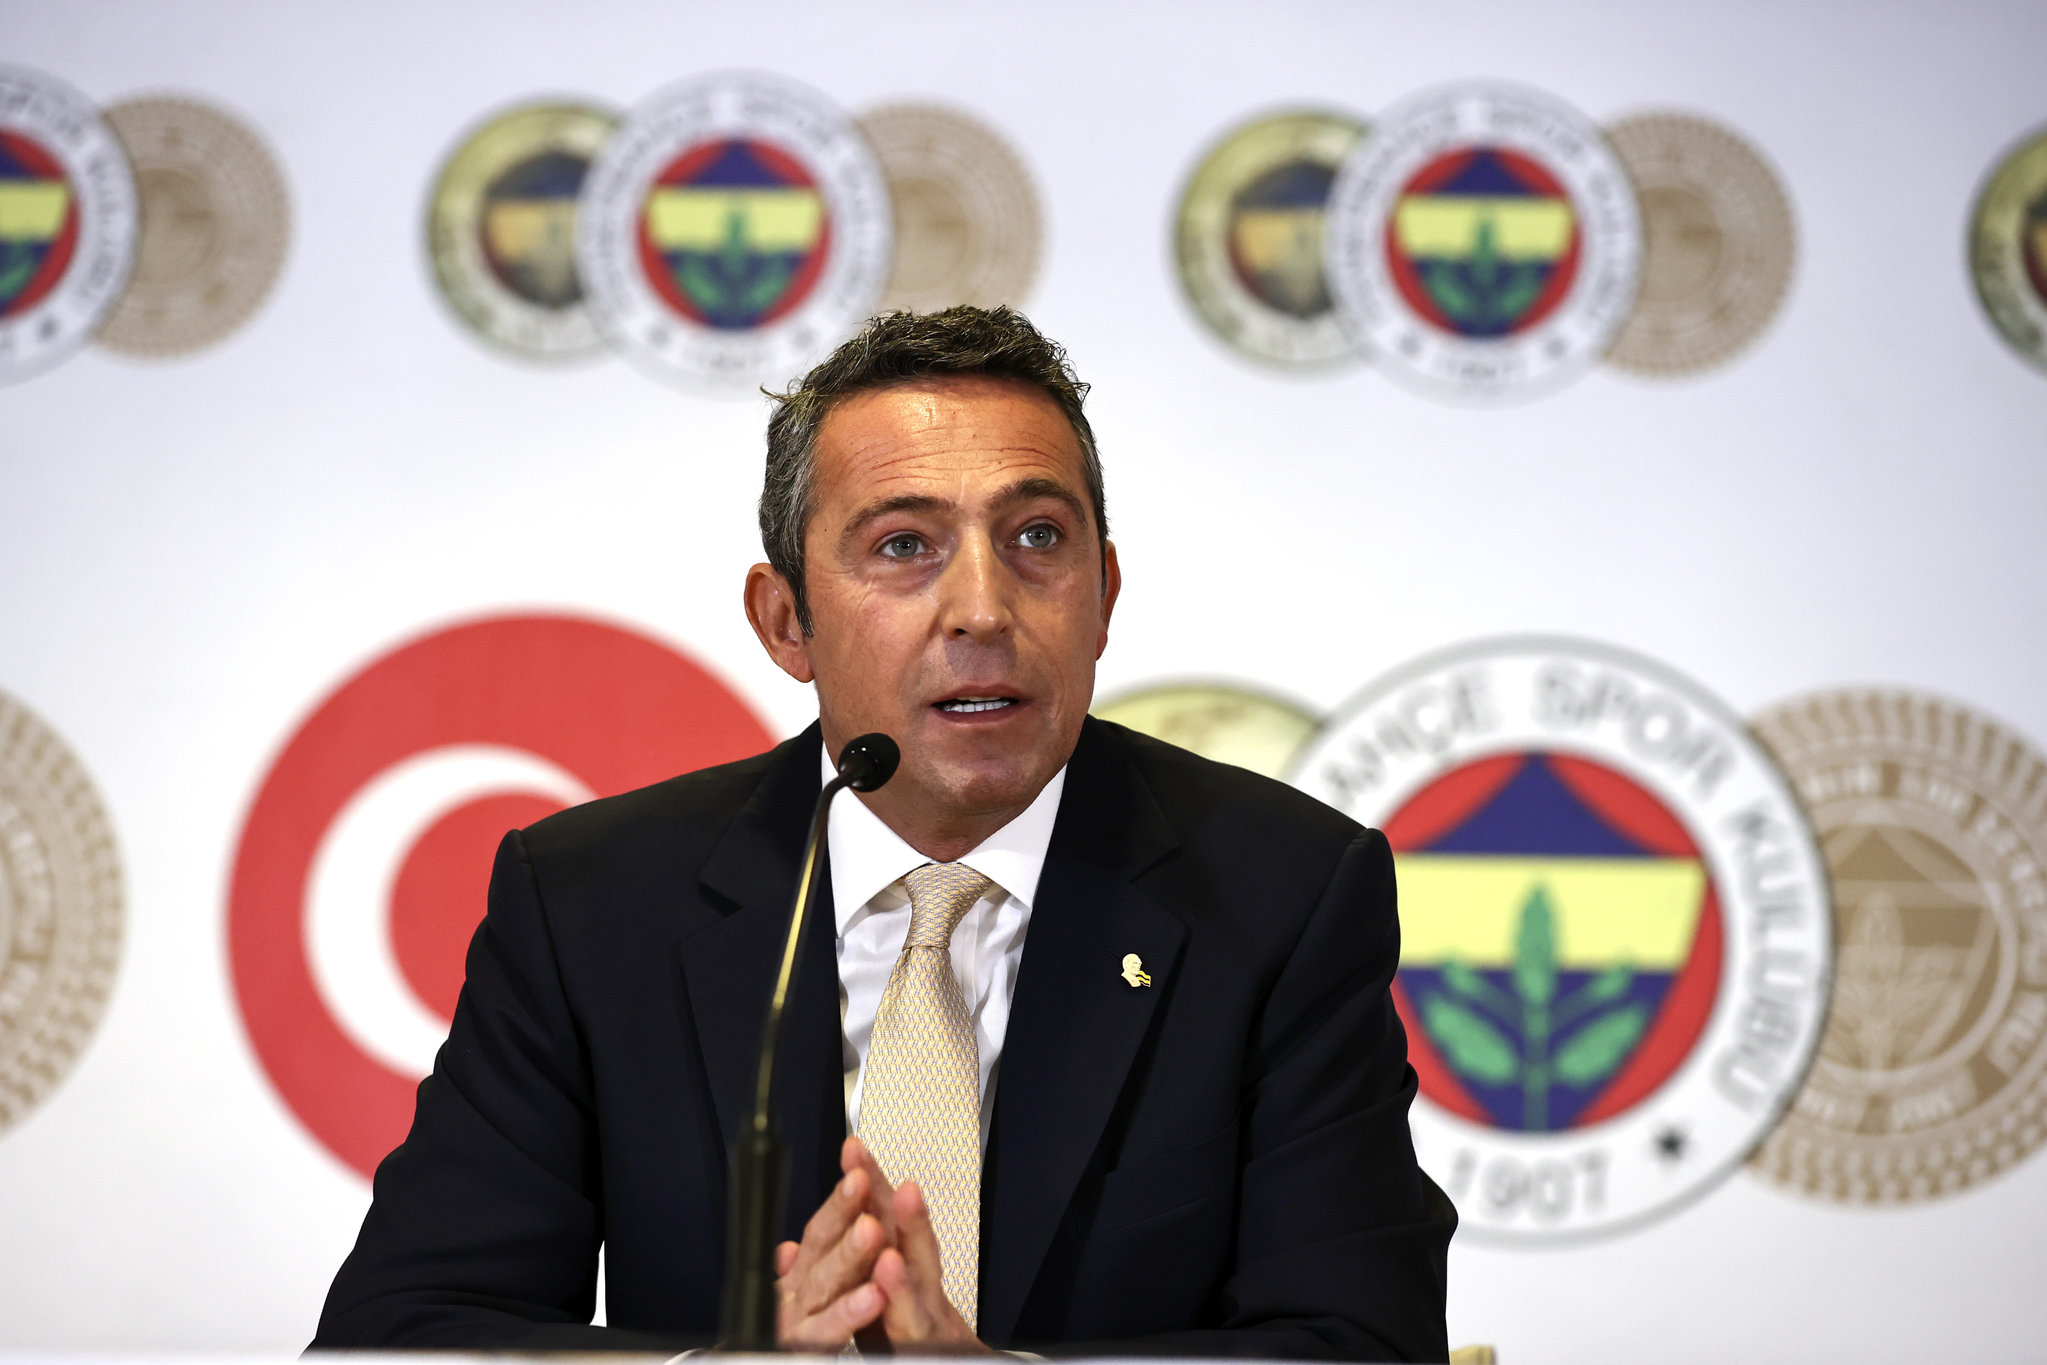 Son dakika spor haberi: Fenerbahçe’nin Emre Belözoğlu’nun ardından yeni teknik direktörü kim olacak? İşte adaylar...